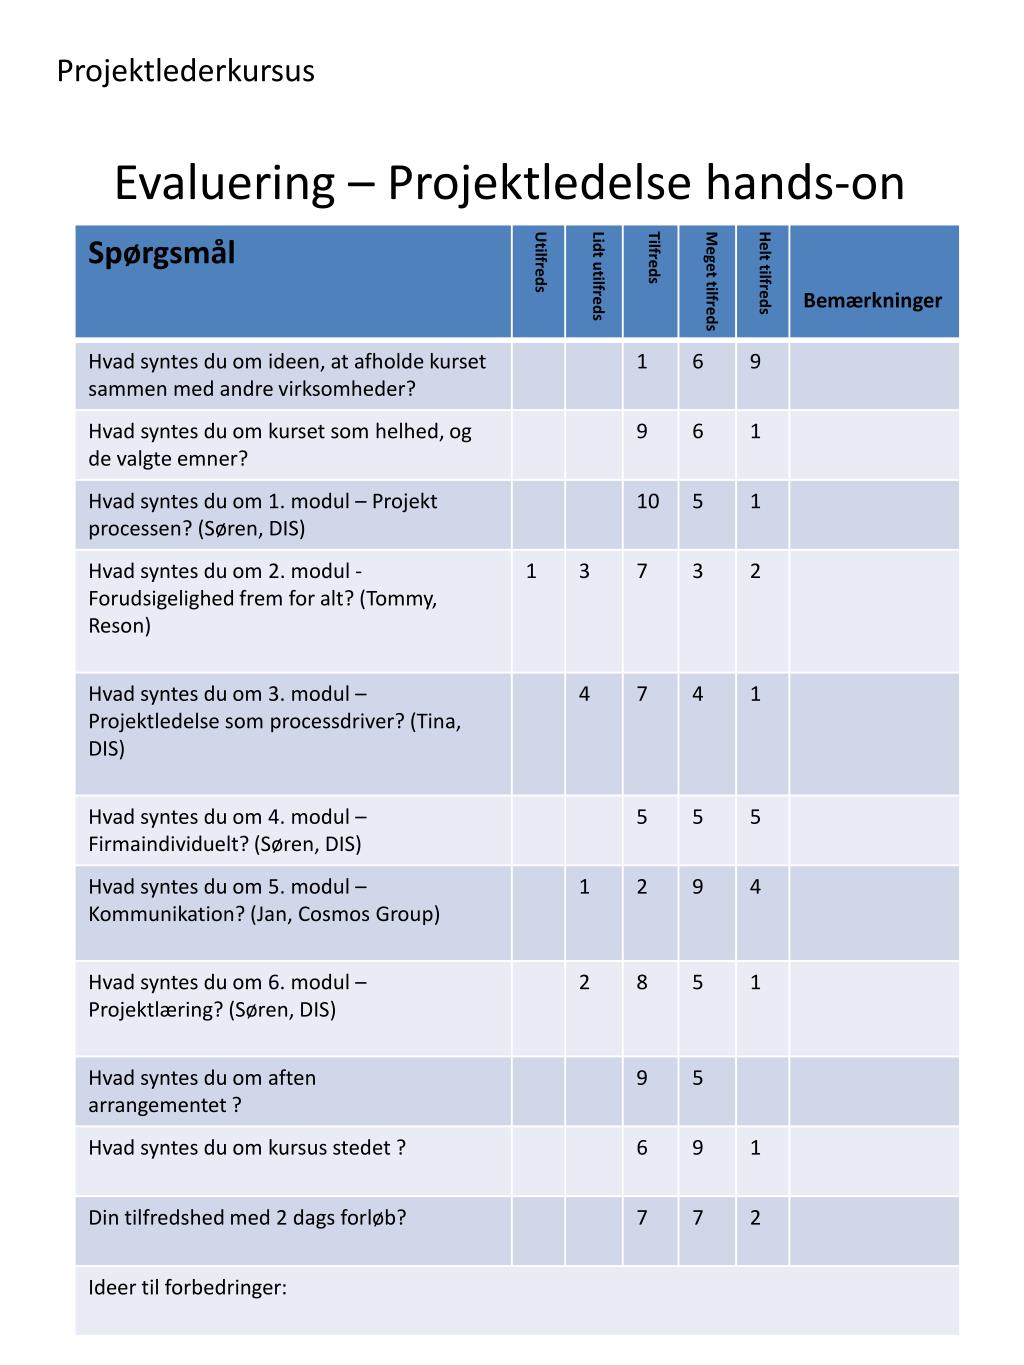 PPT - Evaluering – Projektledelse hands-on PowerPoint Presentation, free  download - ID:4281659